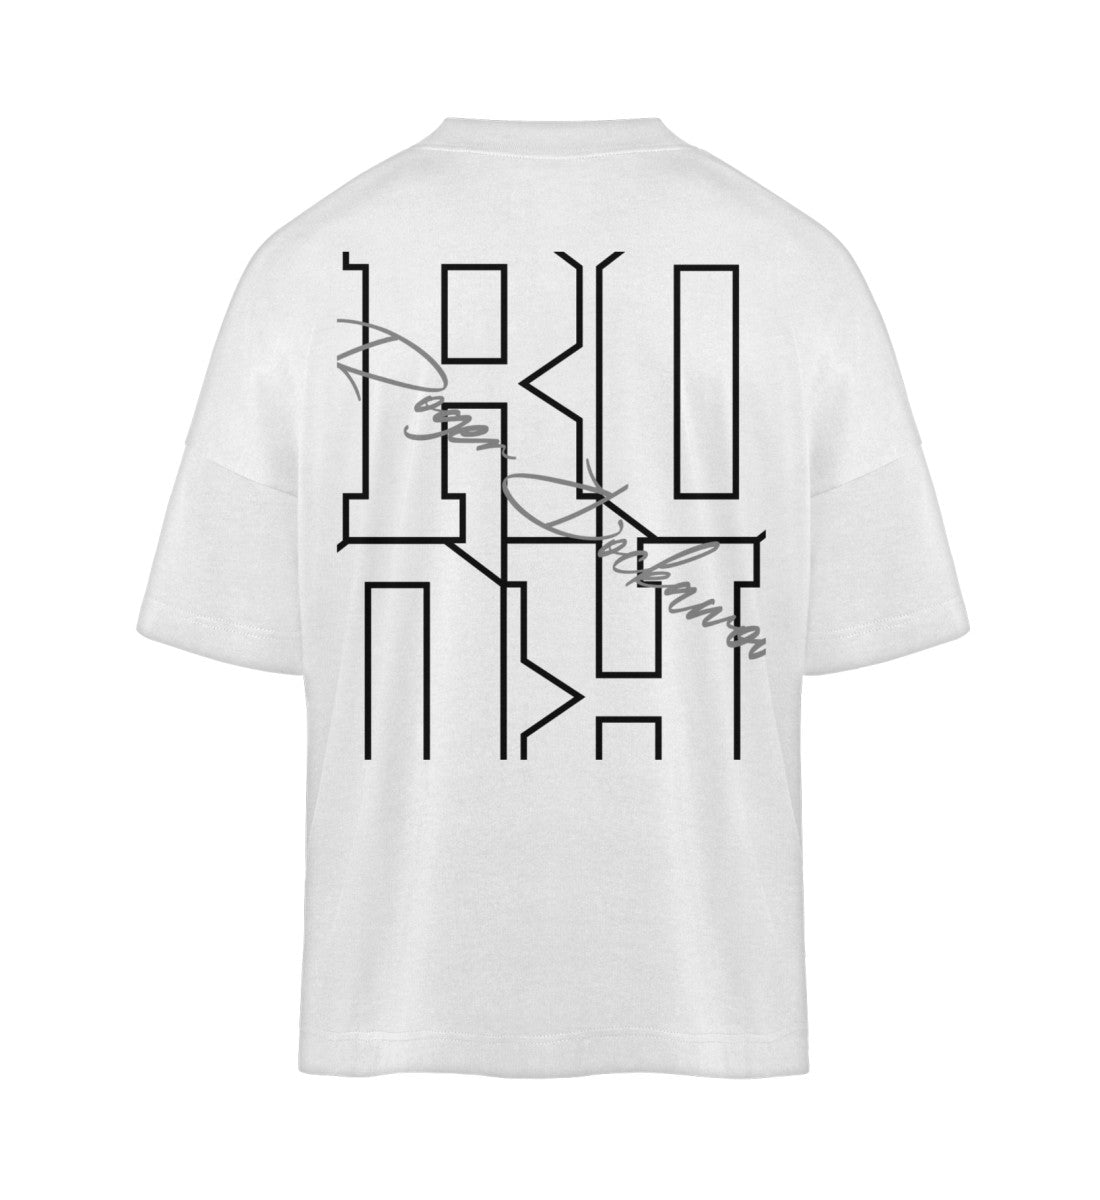 Weißes T-Shirt Unisex Oversize Fit für Frauen und Männer bedruckt mit dem Design der Roger Rockawoo Kollektion Schäferhund we are not alone